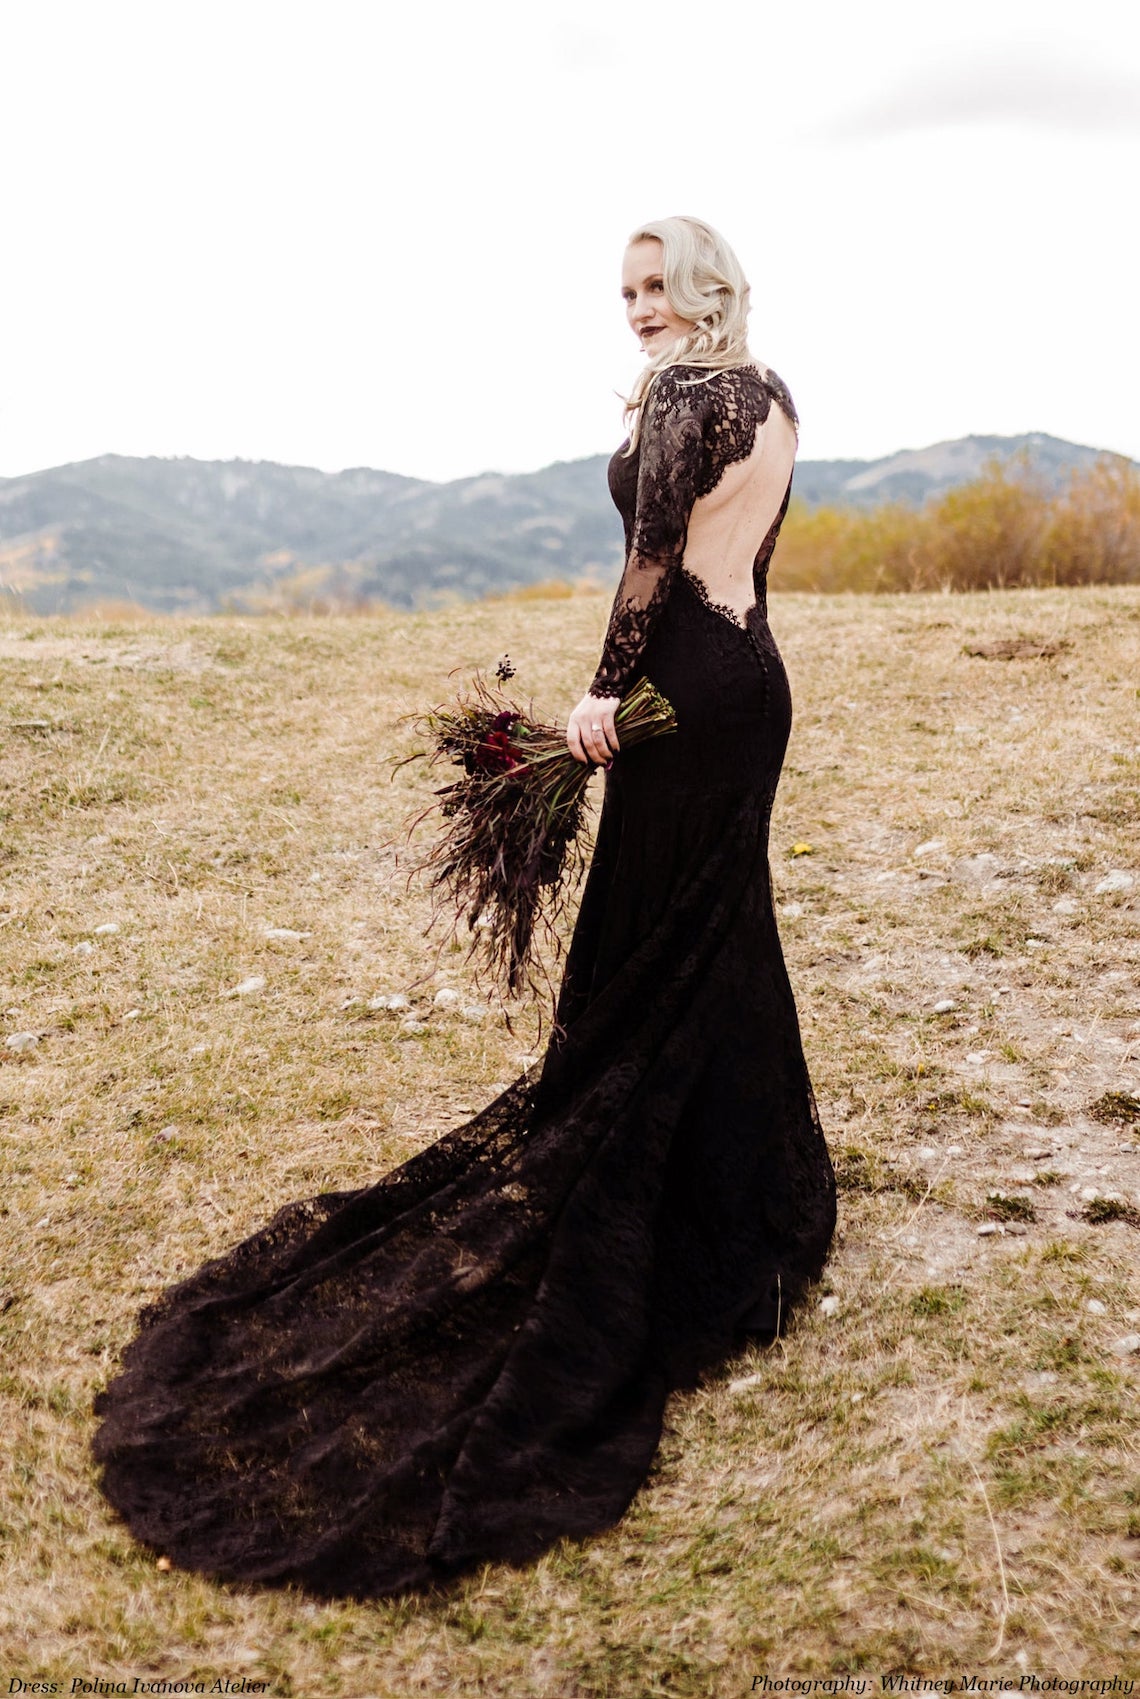 Polina Ivanova Backless Gothic Black Wedding Dress Gorgeous Black Wedding Dresses for the Alternative Bride Bridal Musings - 30 chiếc váy cưới màu đen mà chúng tôi yêu thích cho cô dâu thay thế